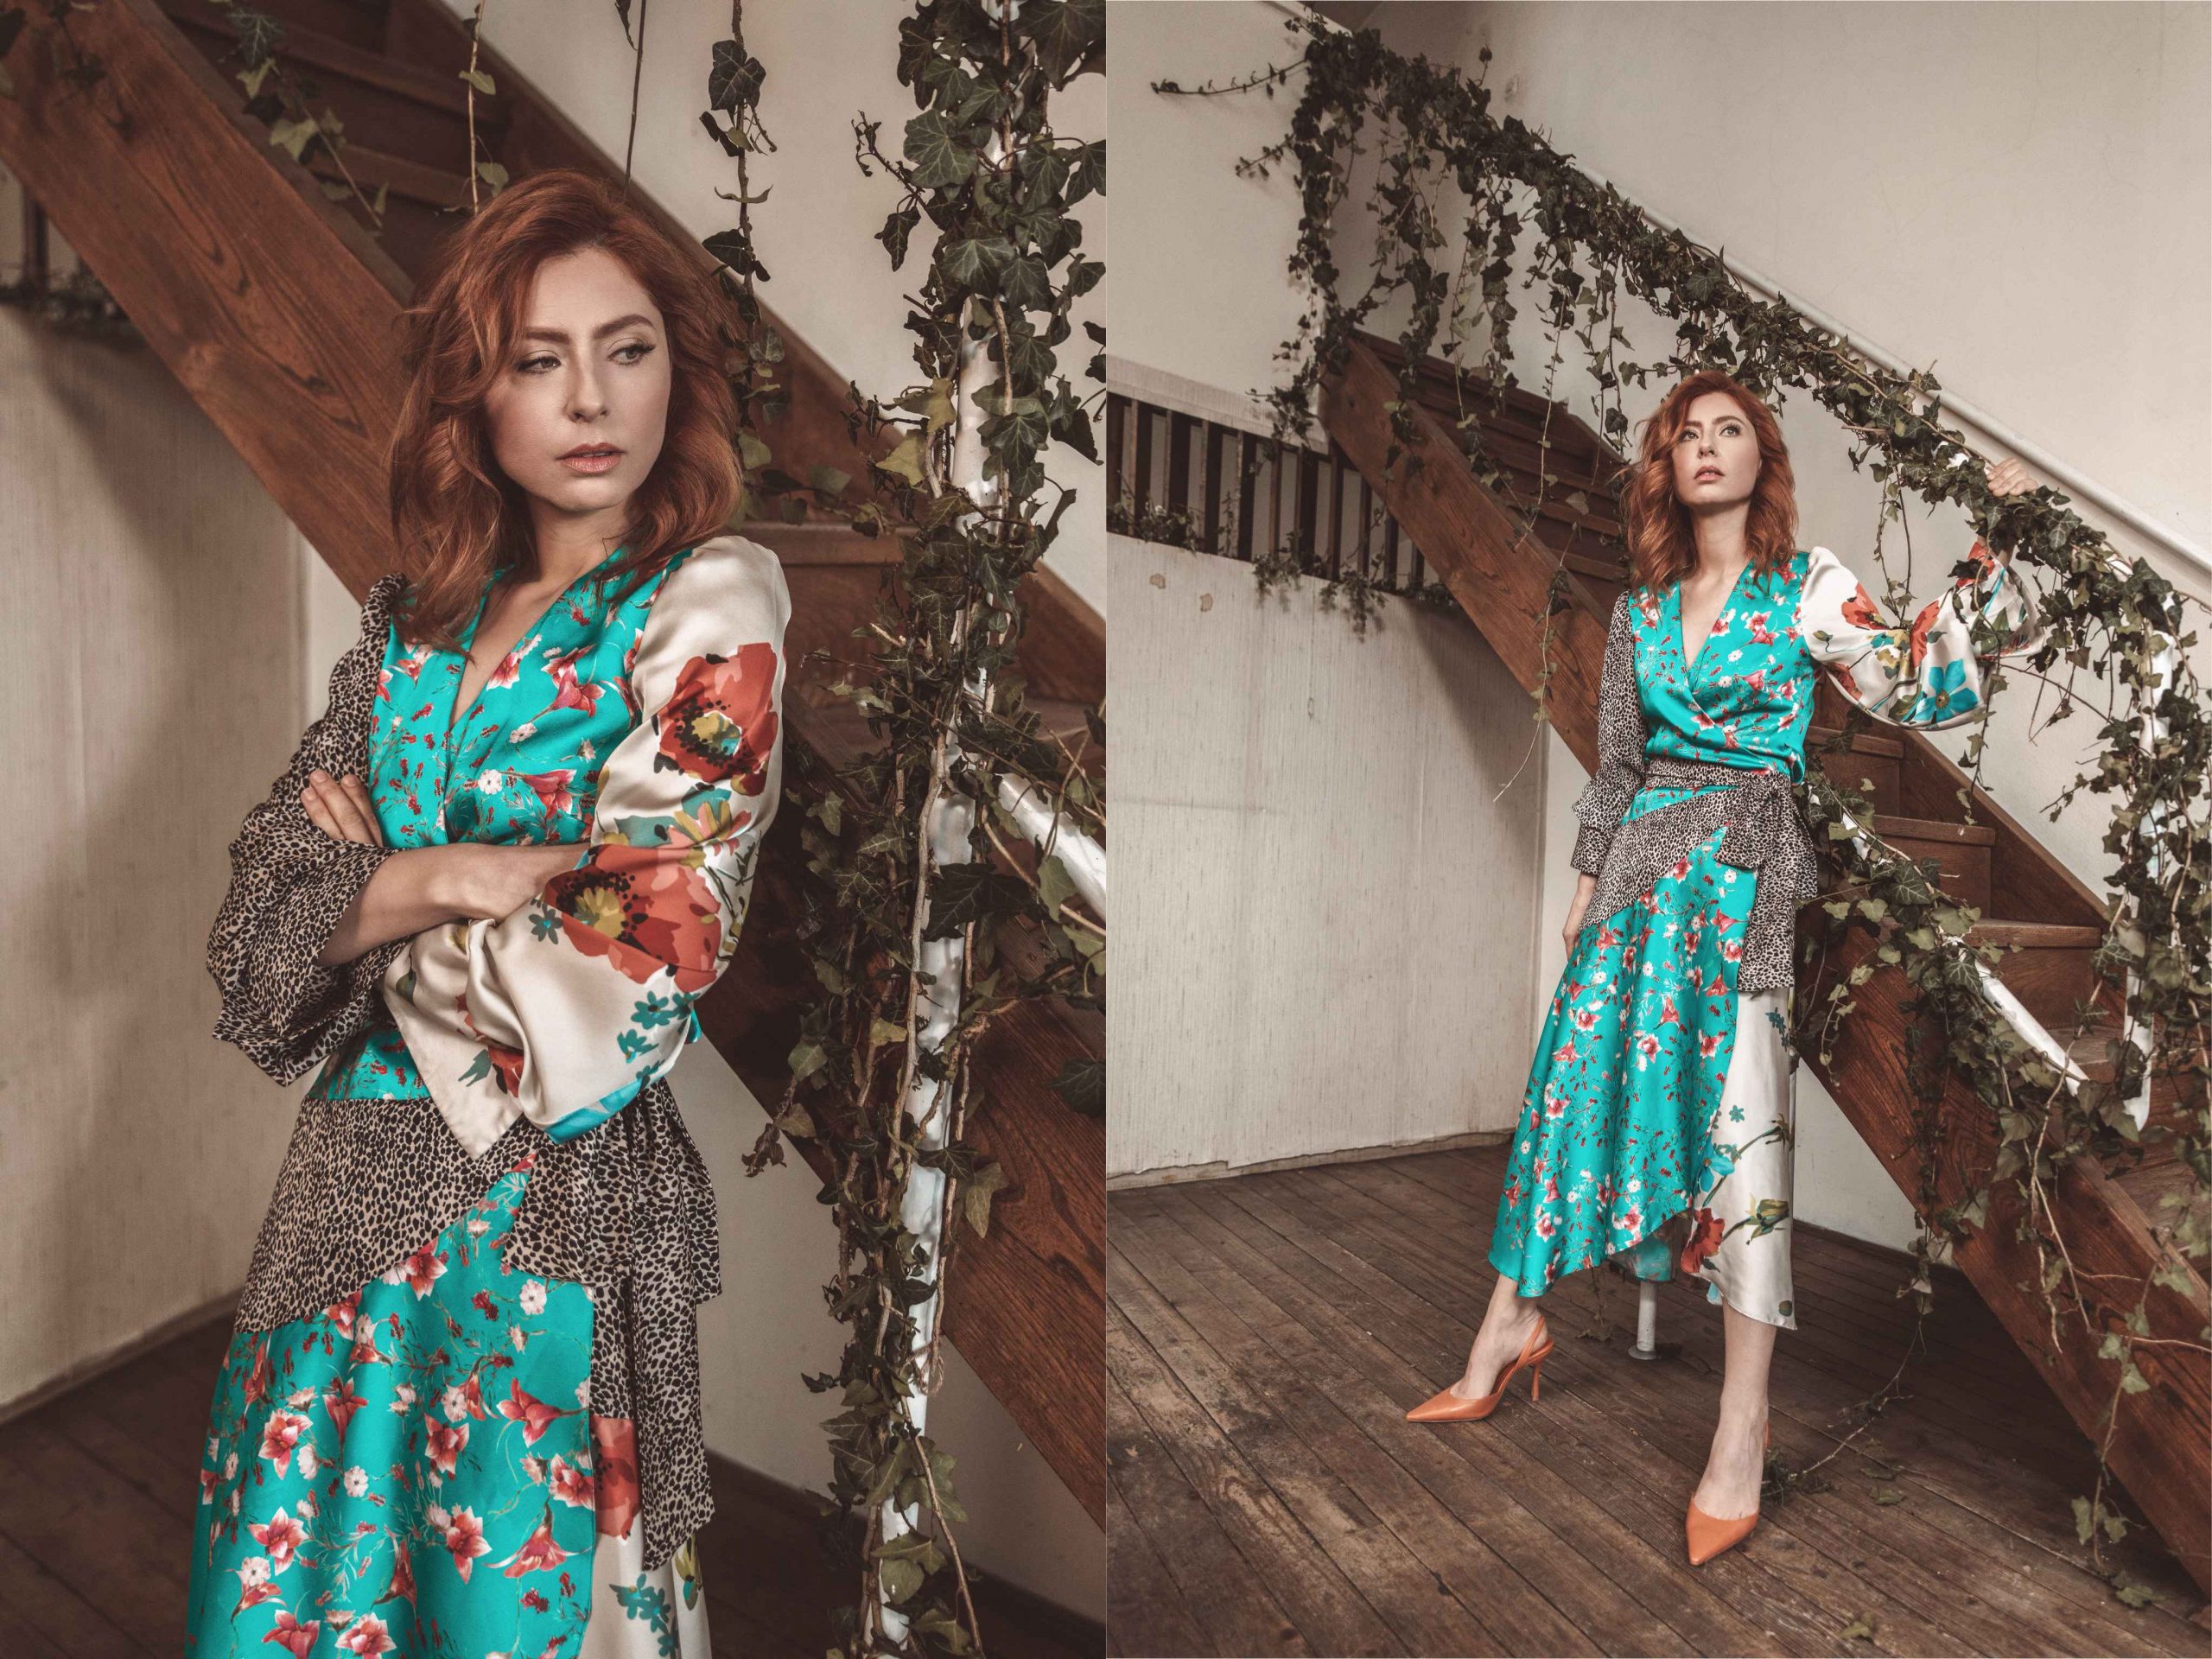 Poznata glumica donosi razigranu proljetnu kolekciju modnog branda Svoya